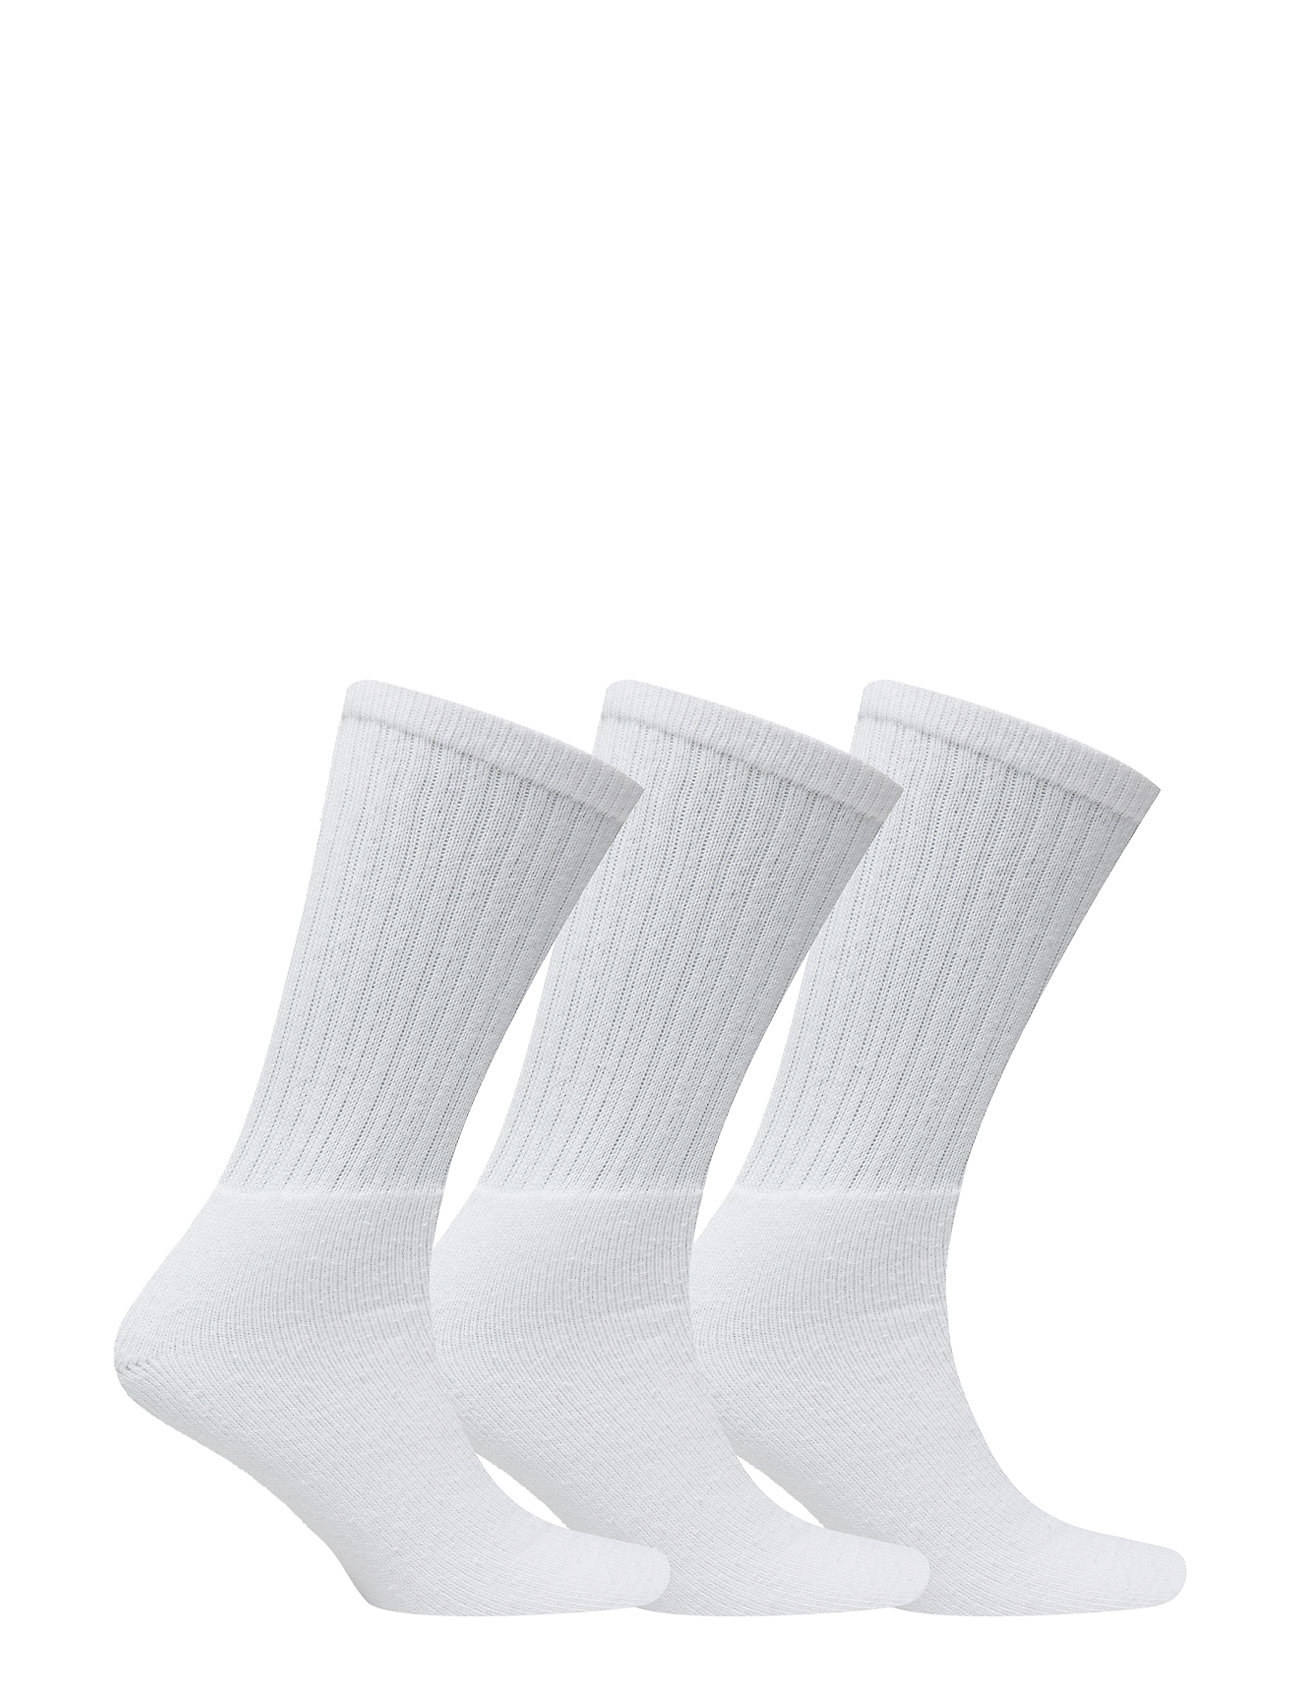 Claudio - Claudio socks tennis 3-pack - die niedrigsten preise - white - 1